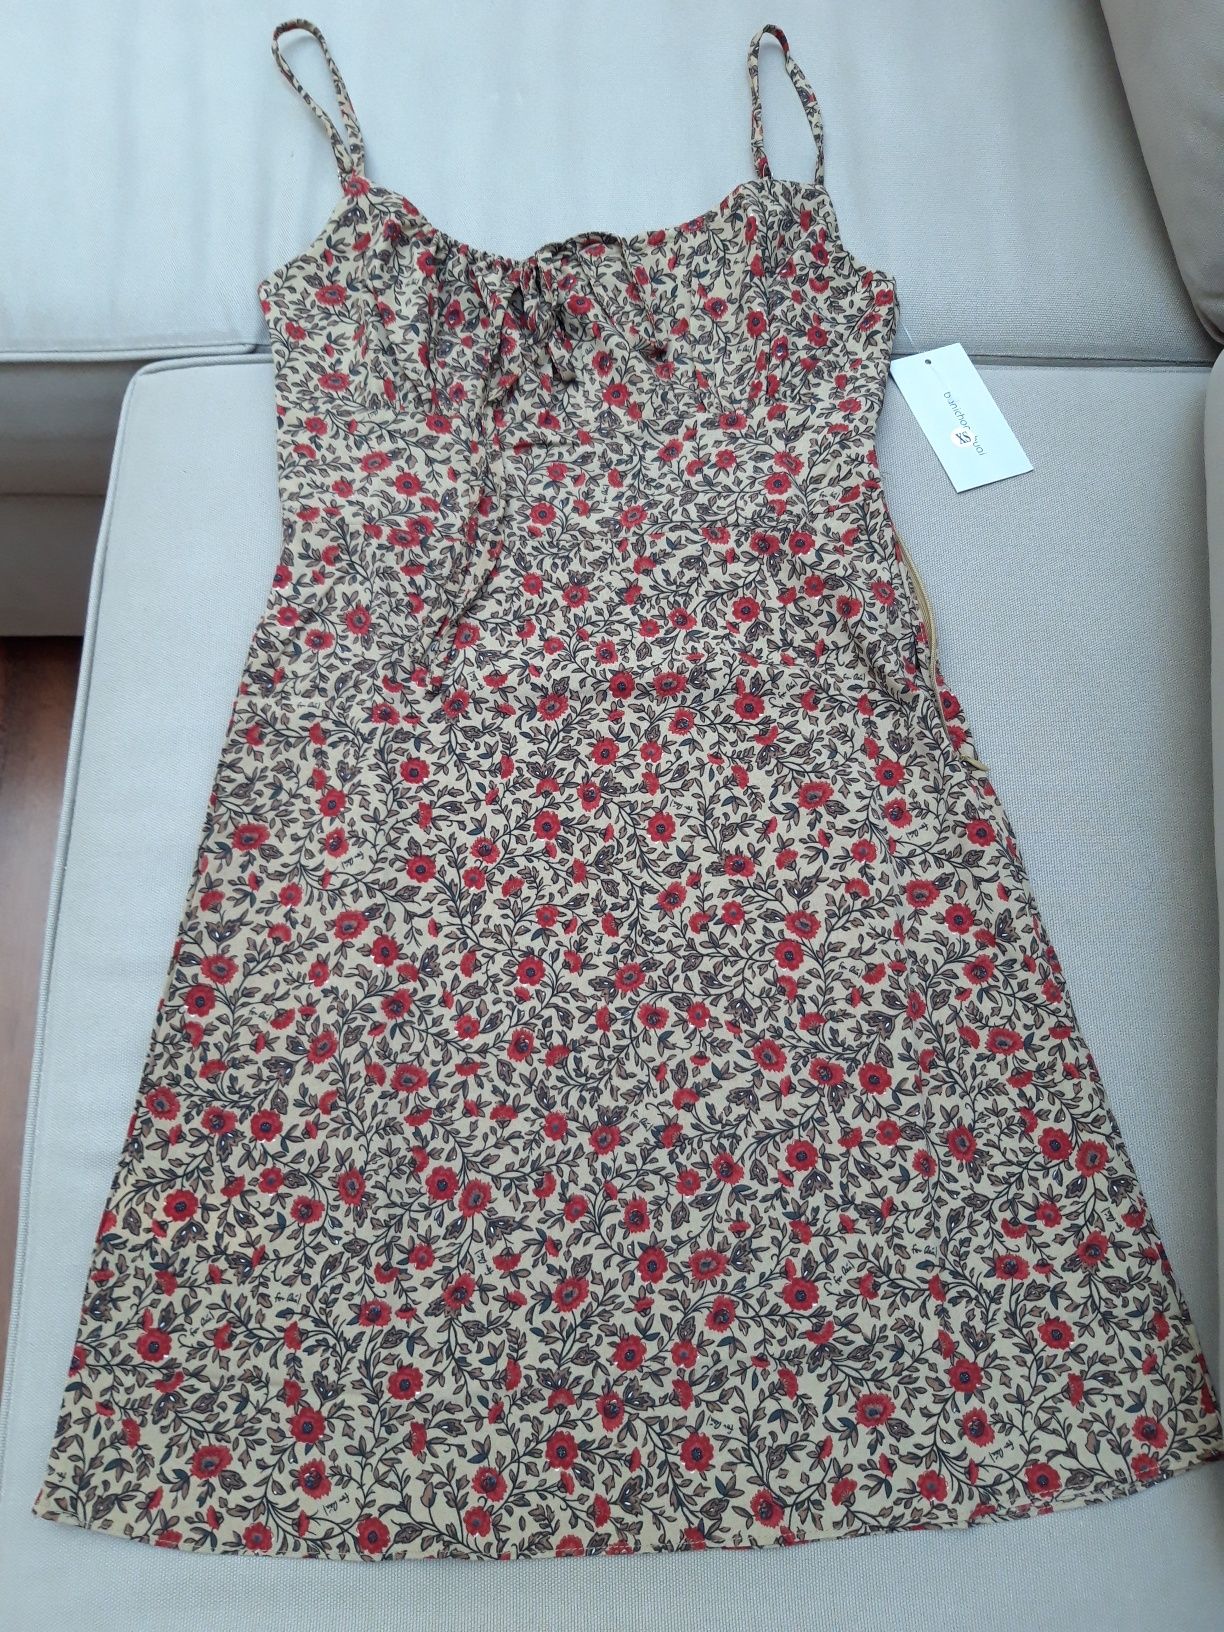 Vestido de Verão c/ padrões florais vintage - bege/vermelho XS-S NOVO!